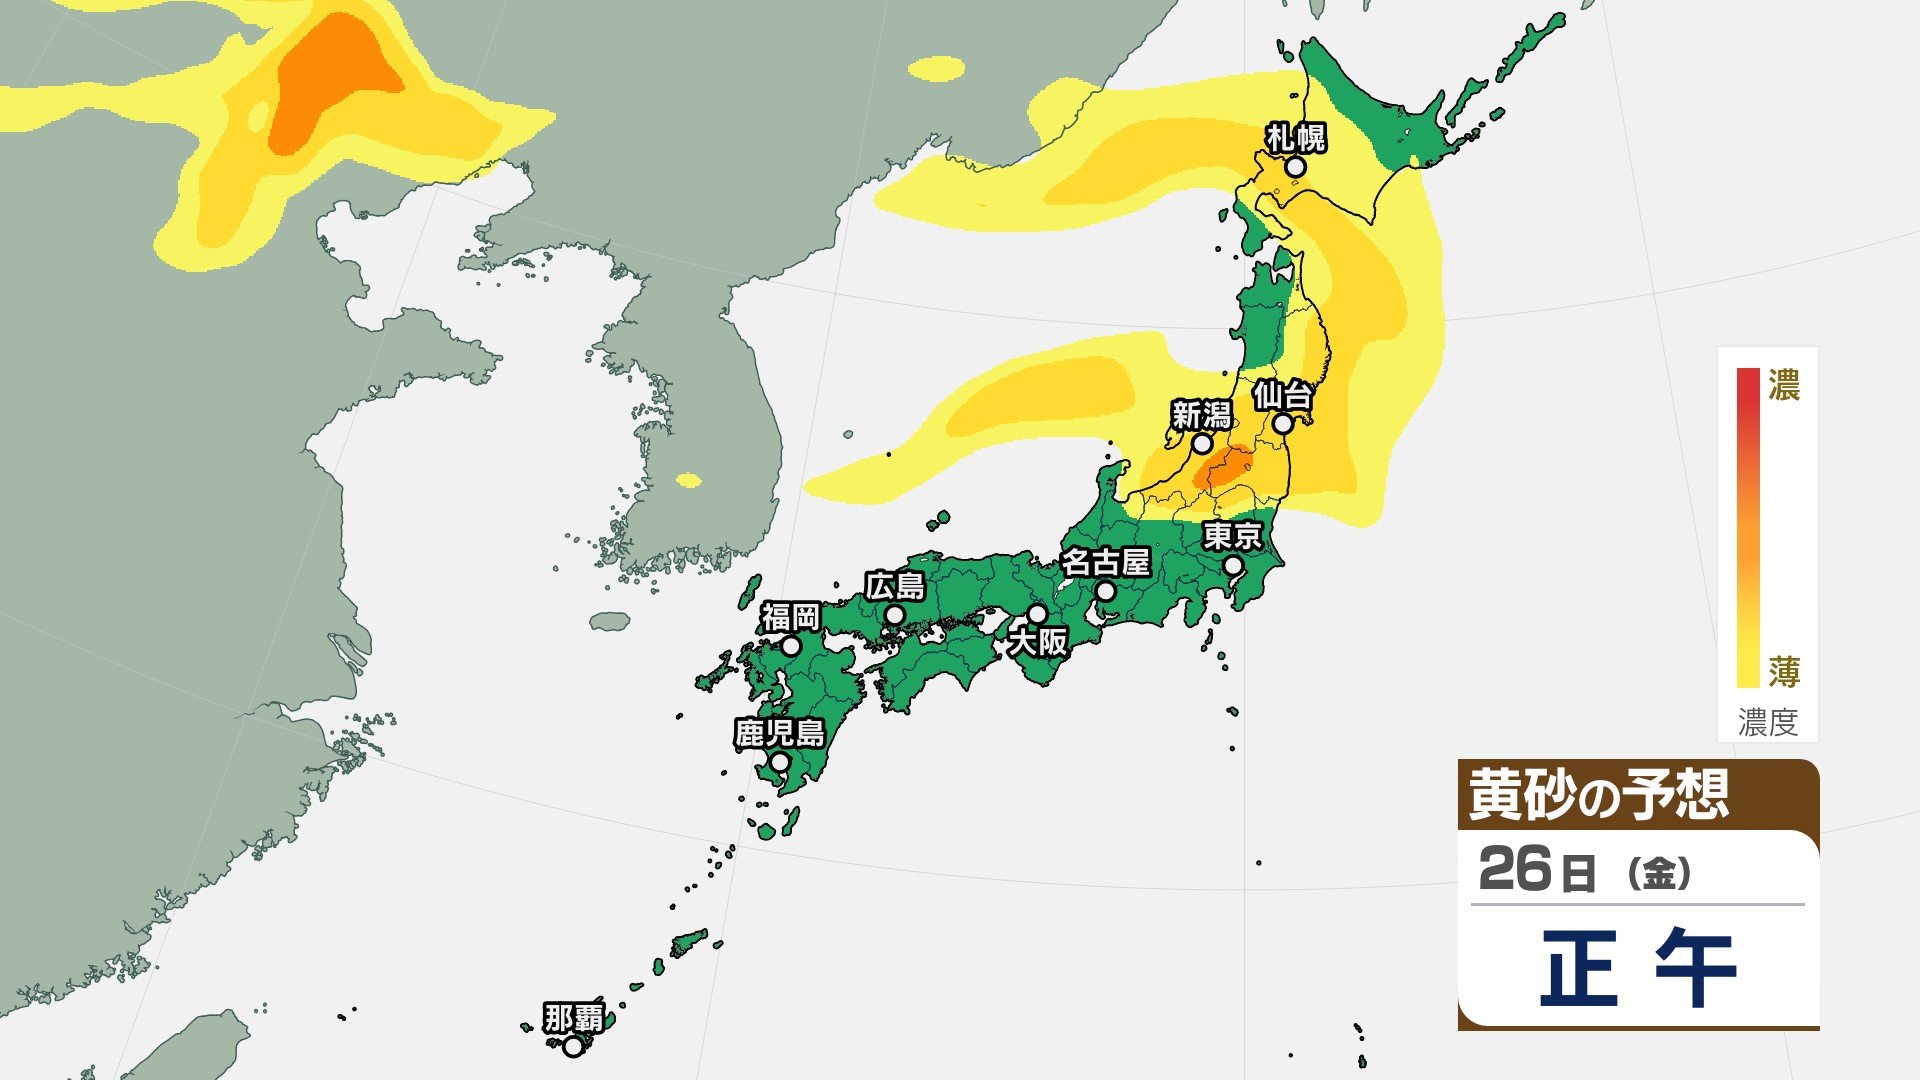 サムネイル_【黄砂】27日にかけて東日本～北日本で黄砂飛散の予想　26日は北海道・東北・関東甲信・北陸・東海、27日は北海道・東北で注意を【3時間ごとの予想】